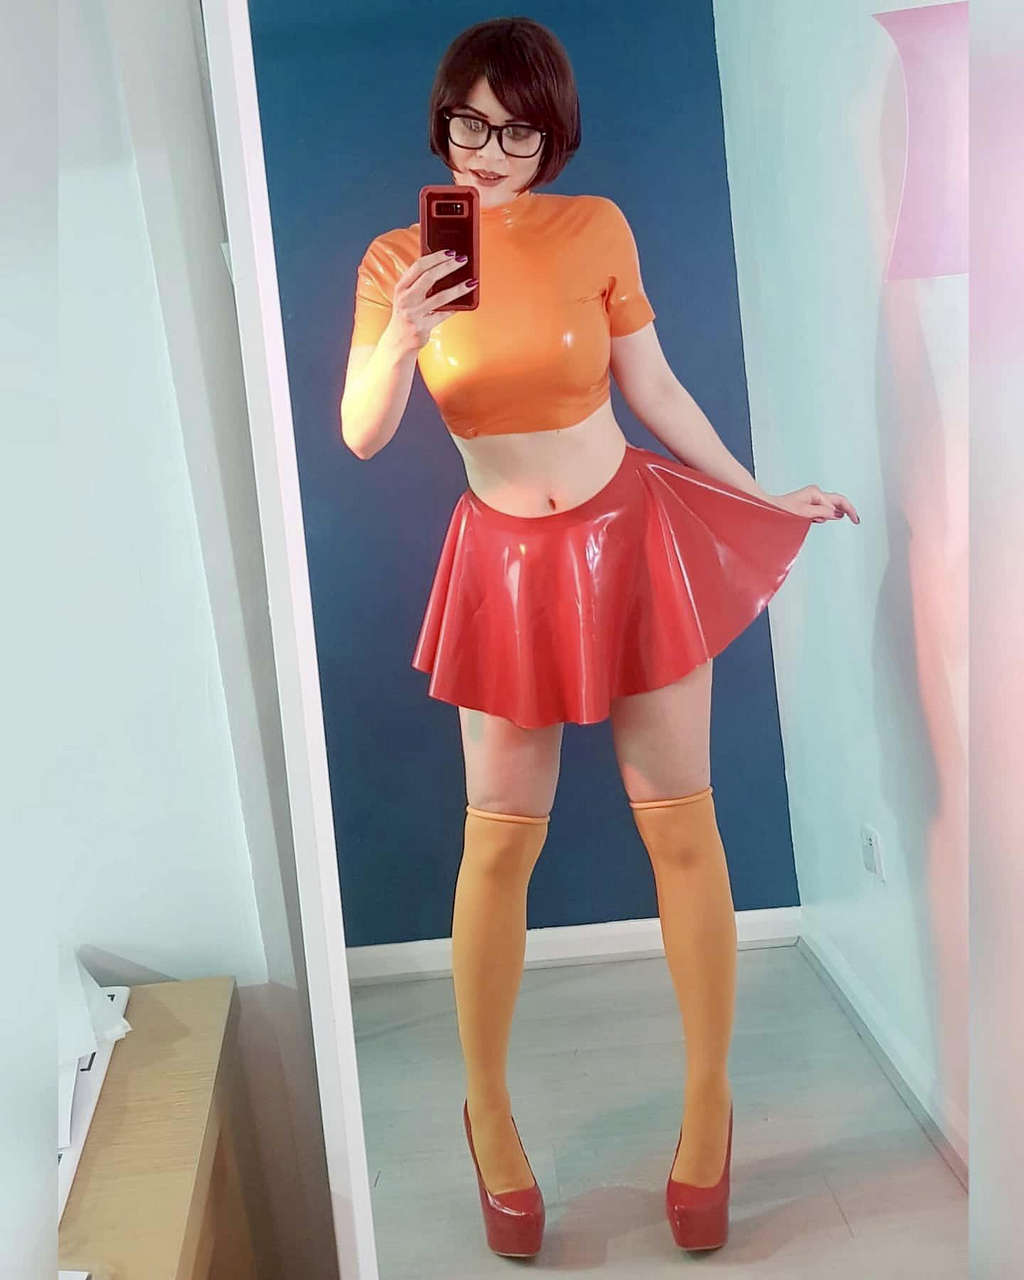 Velma By Purplemuffin